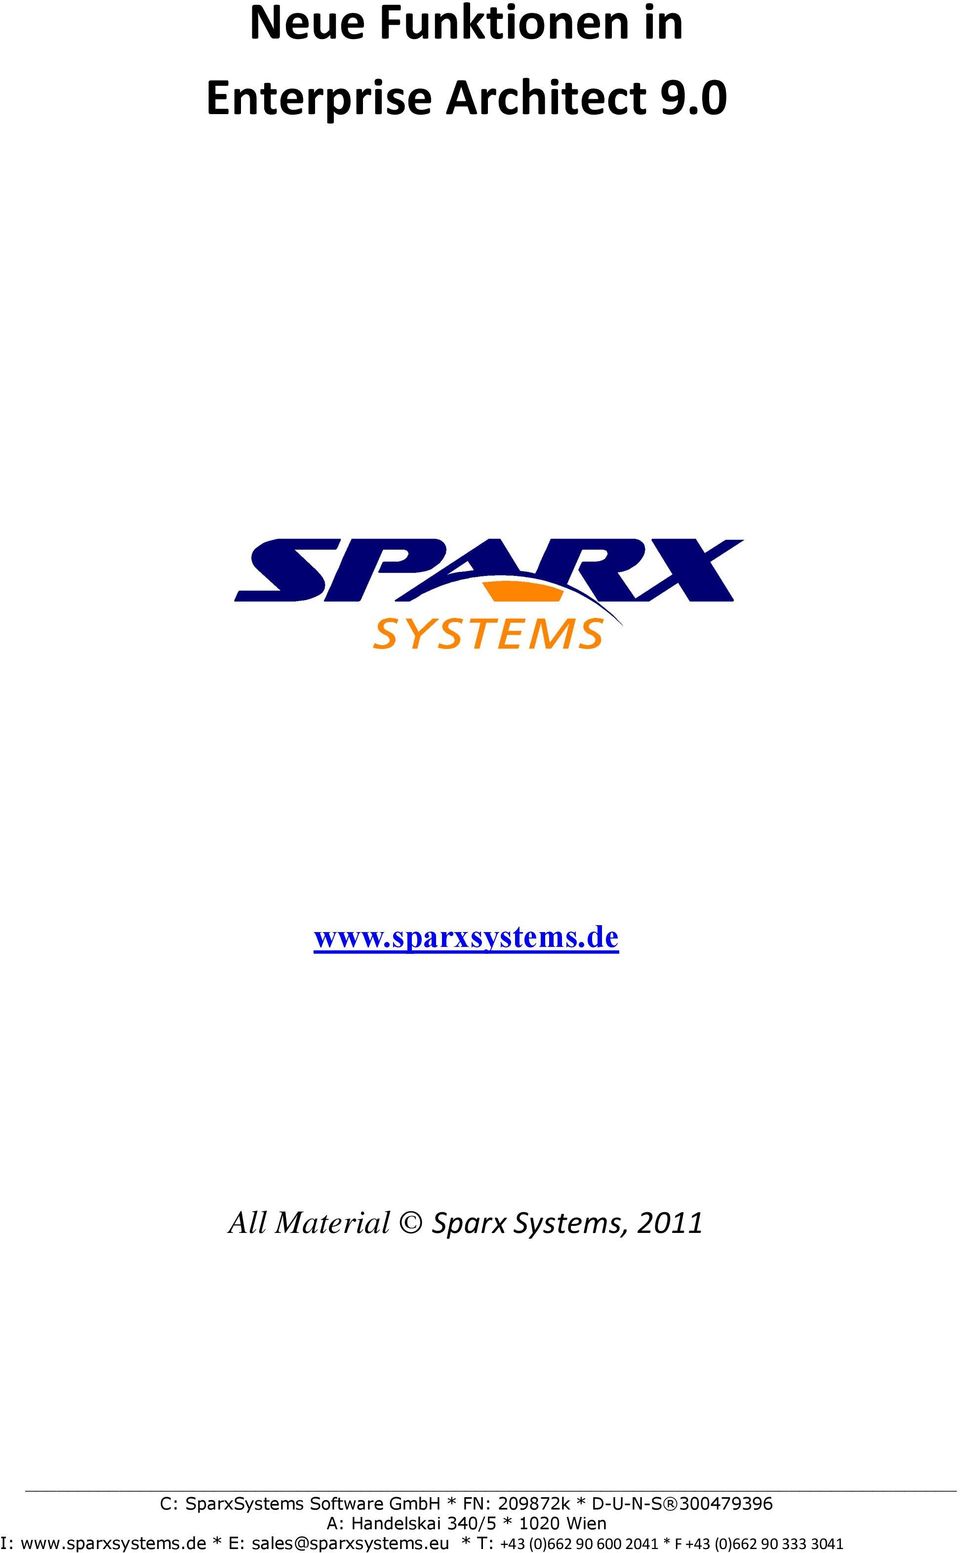 0 www.sparxsystems.